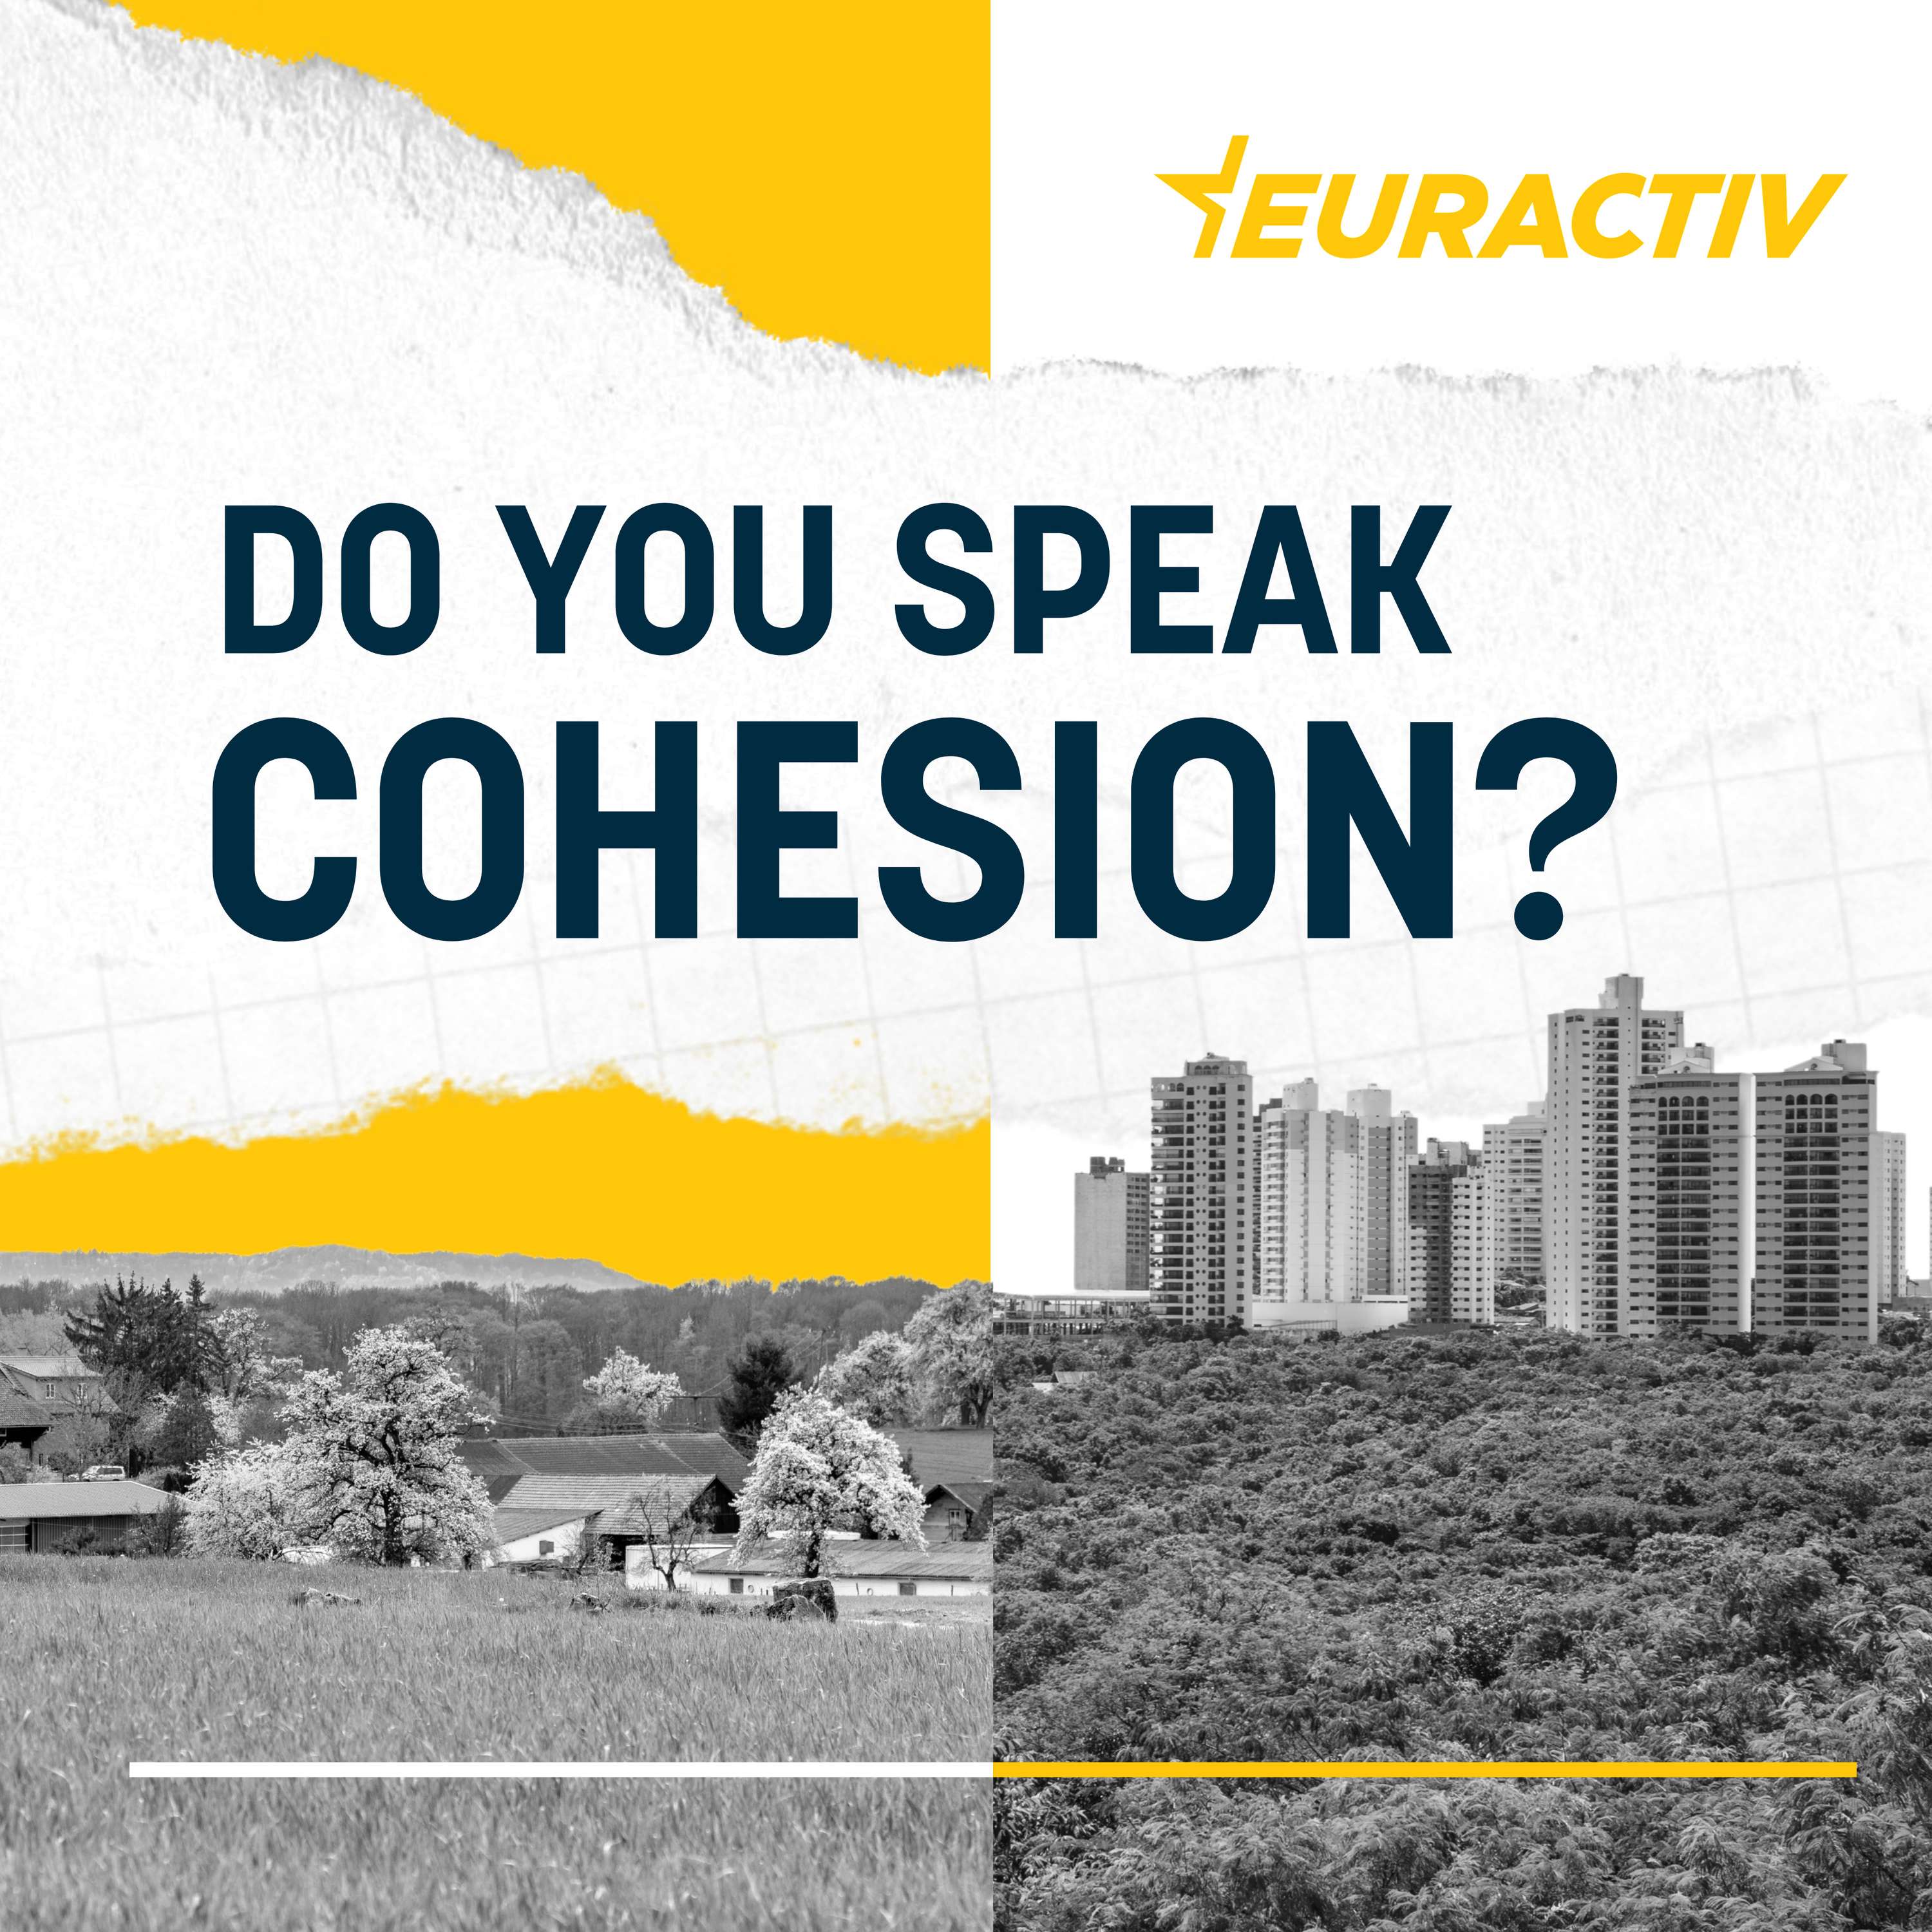 Do you speak cohesion?